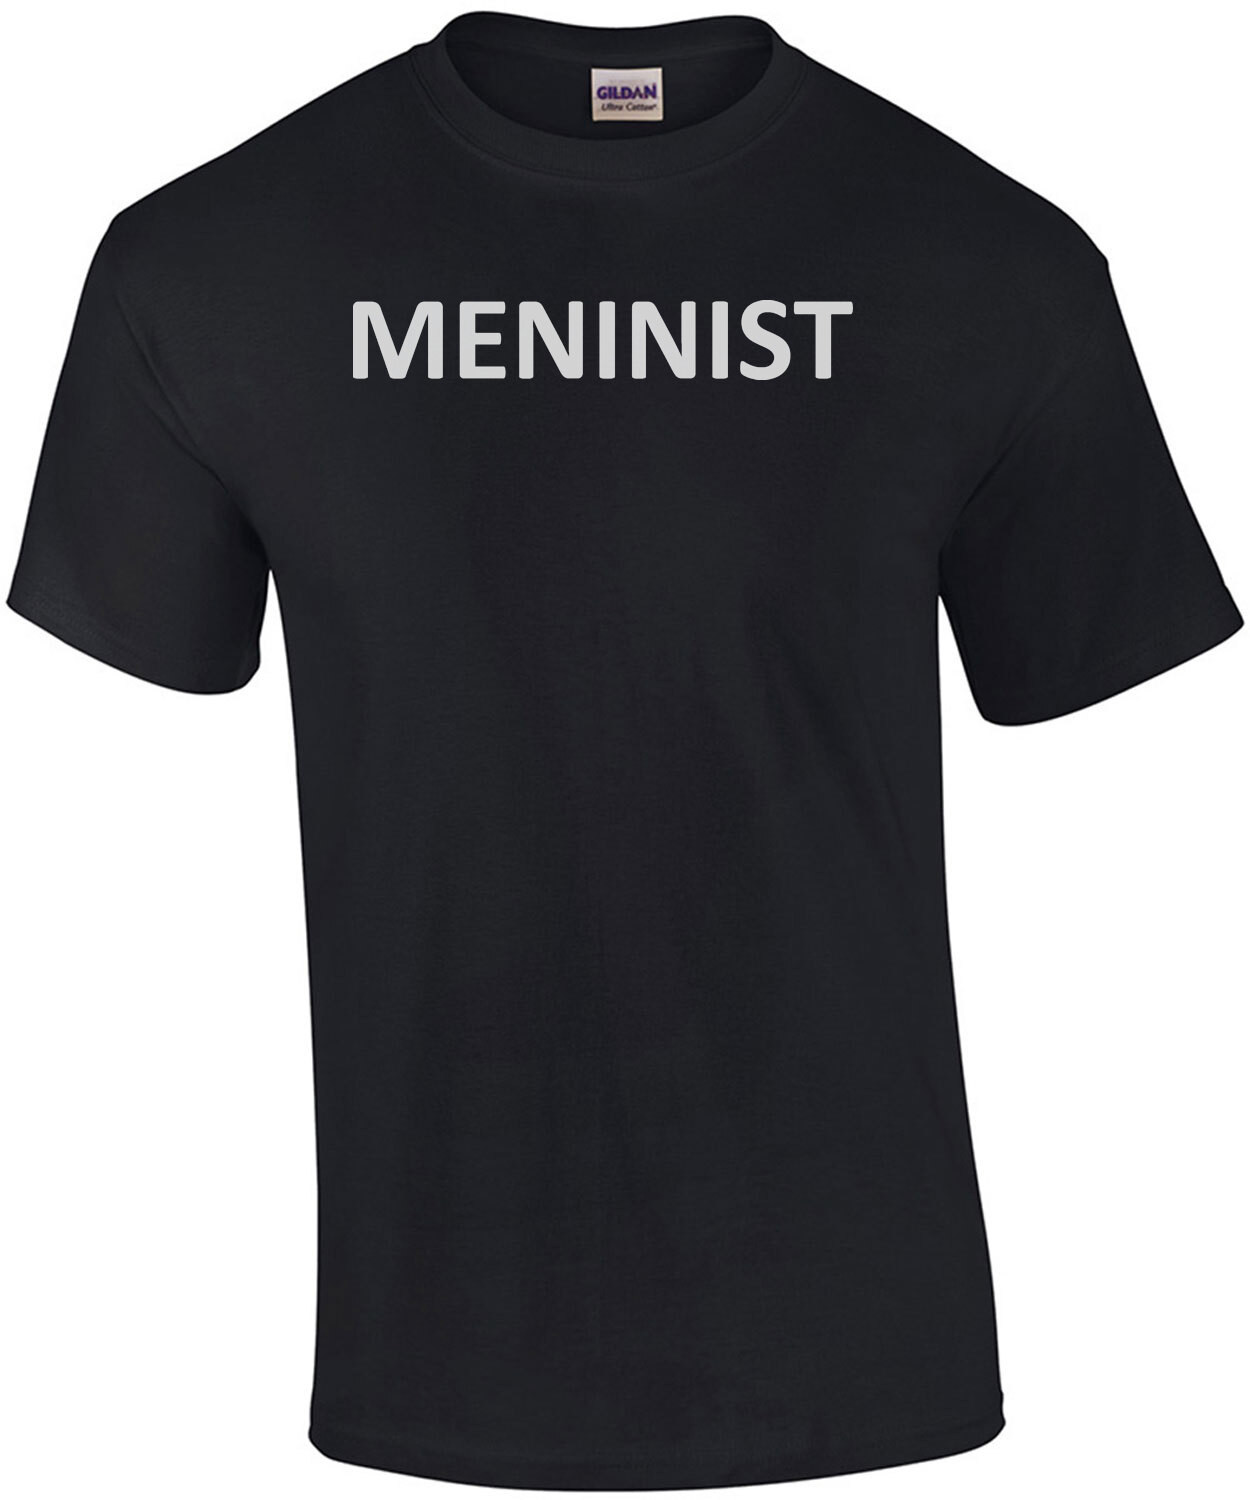 Meninist - t-shirt